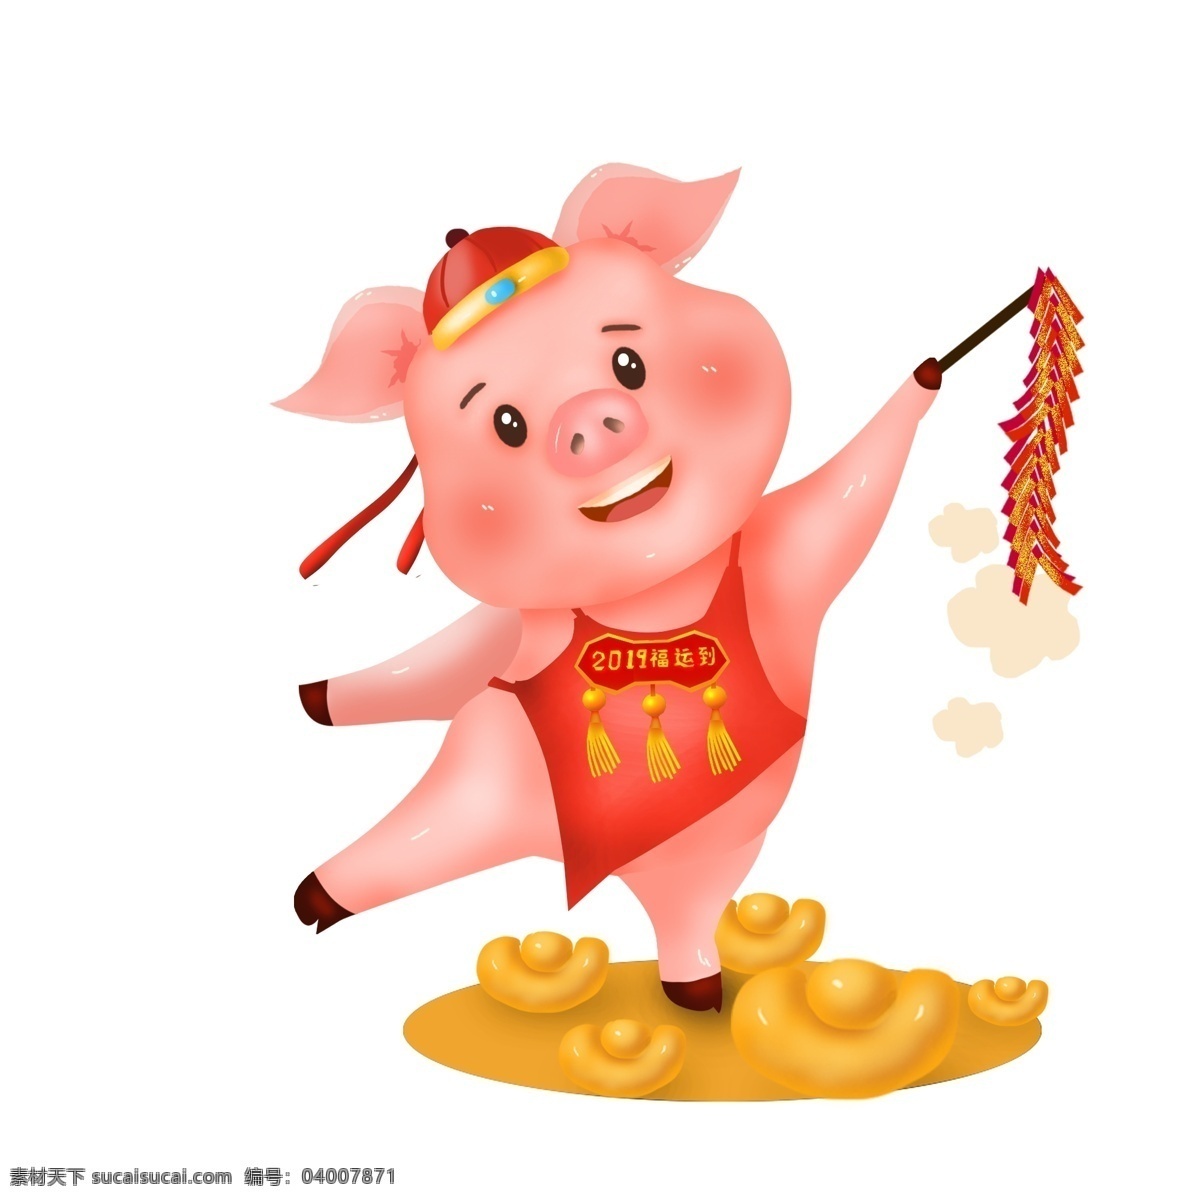 商用 高清 手绘 小 猪 形象 2019 福 运到 鞭炮 元宝 新年 猪形象 可商用 福运到